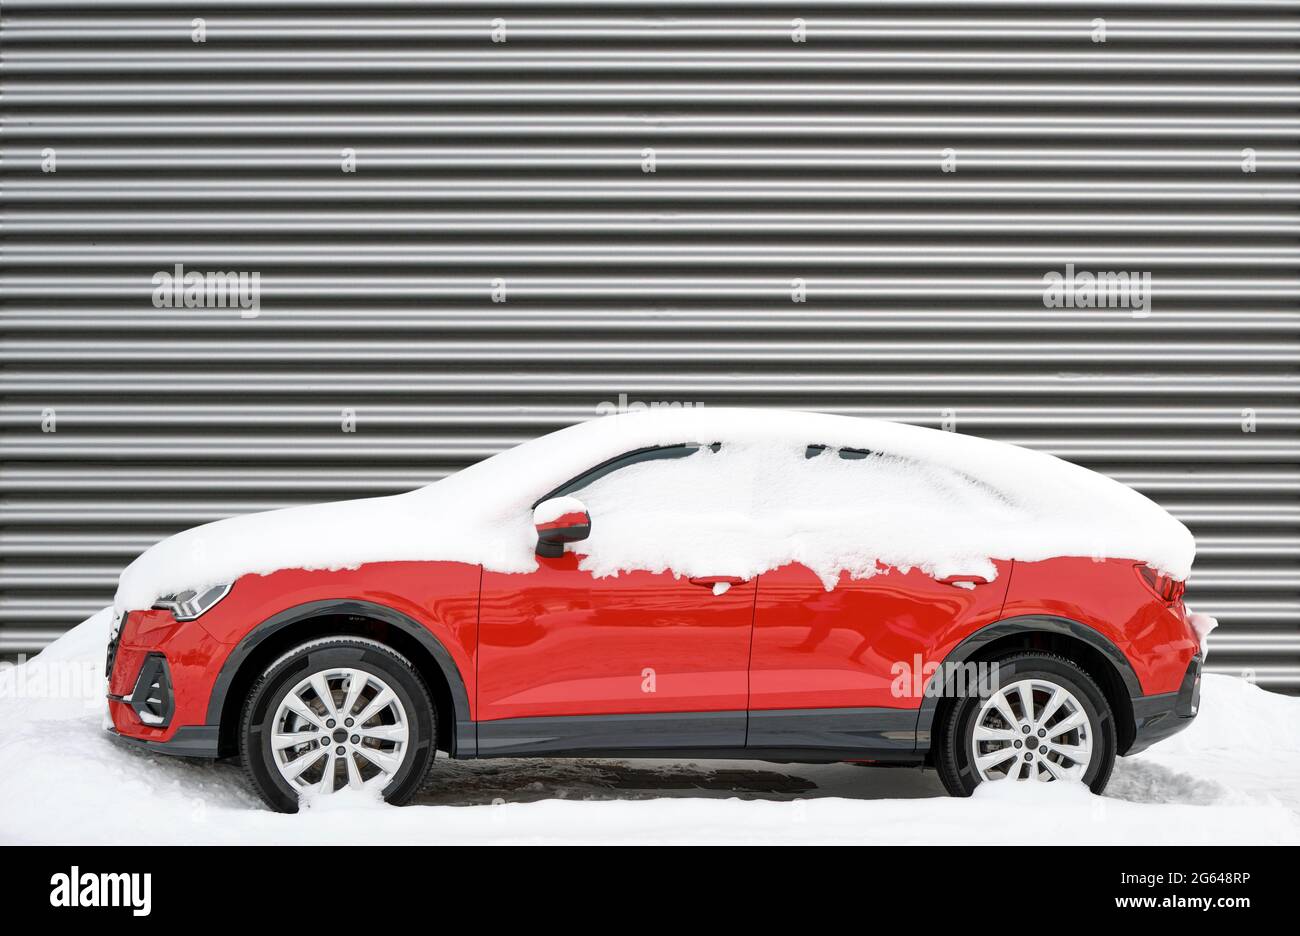 Voiture rouge moderne recouverte de neige en hiver contre un mur en métal ondulé Banque D'Images